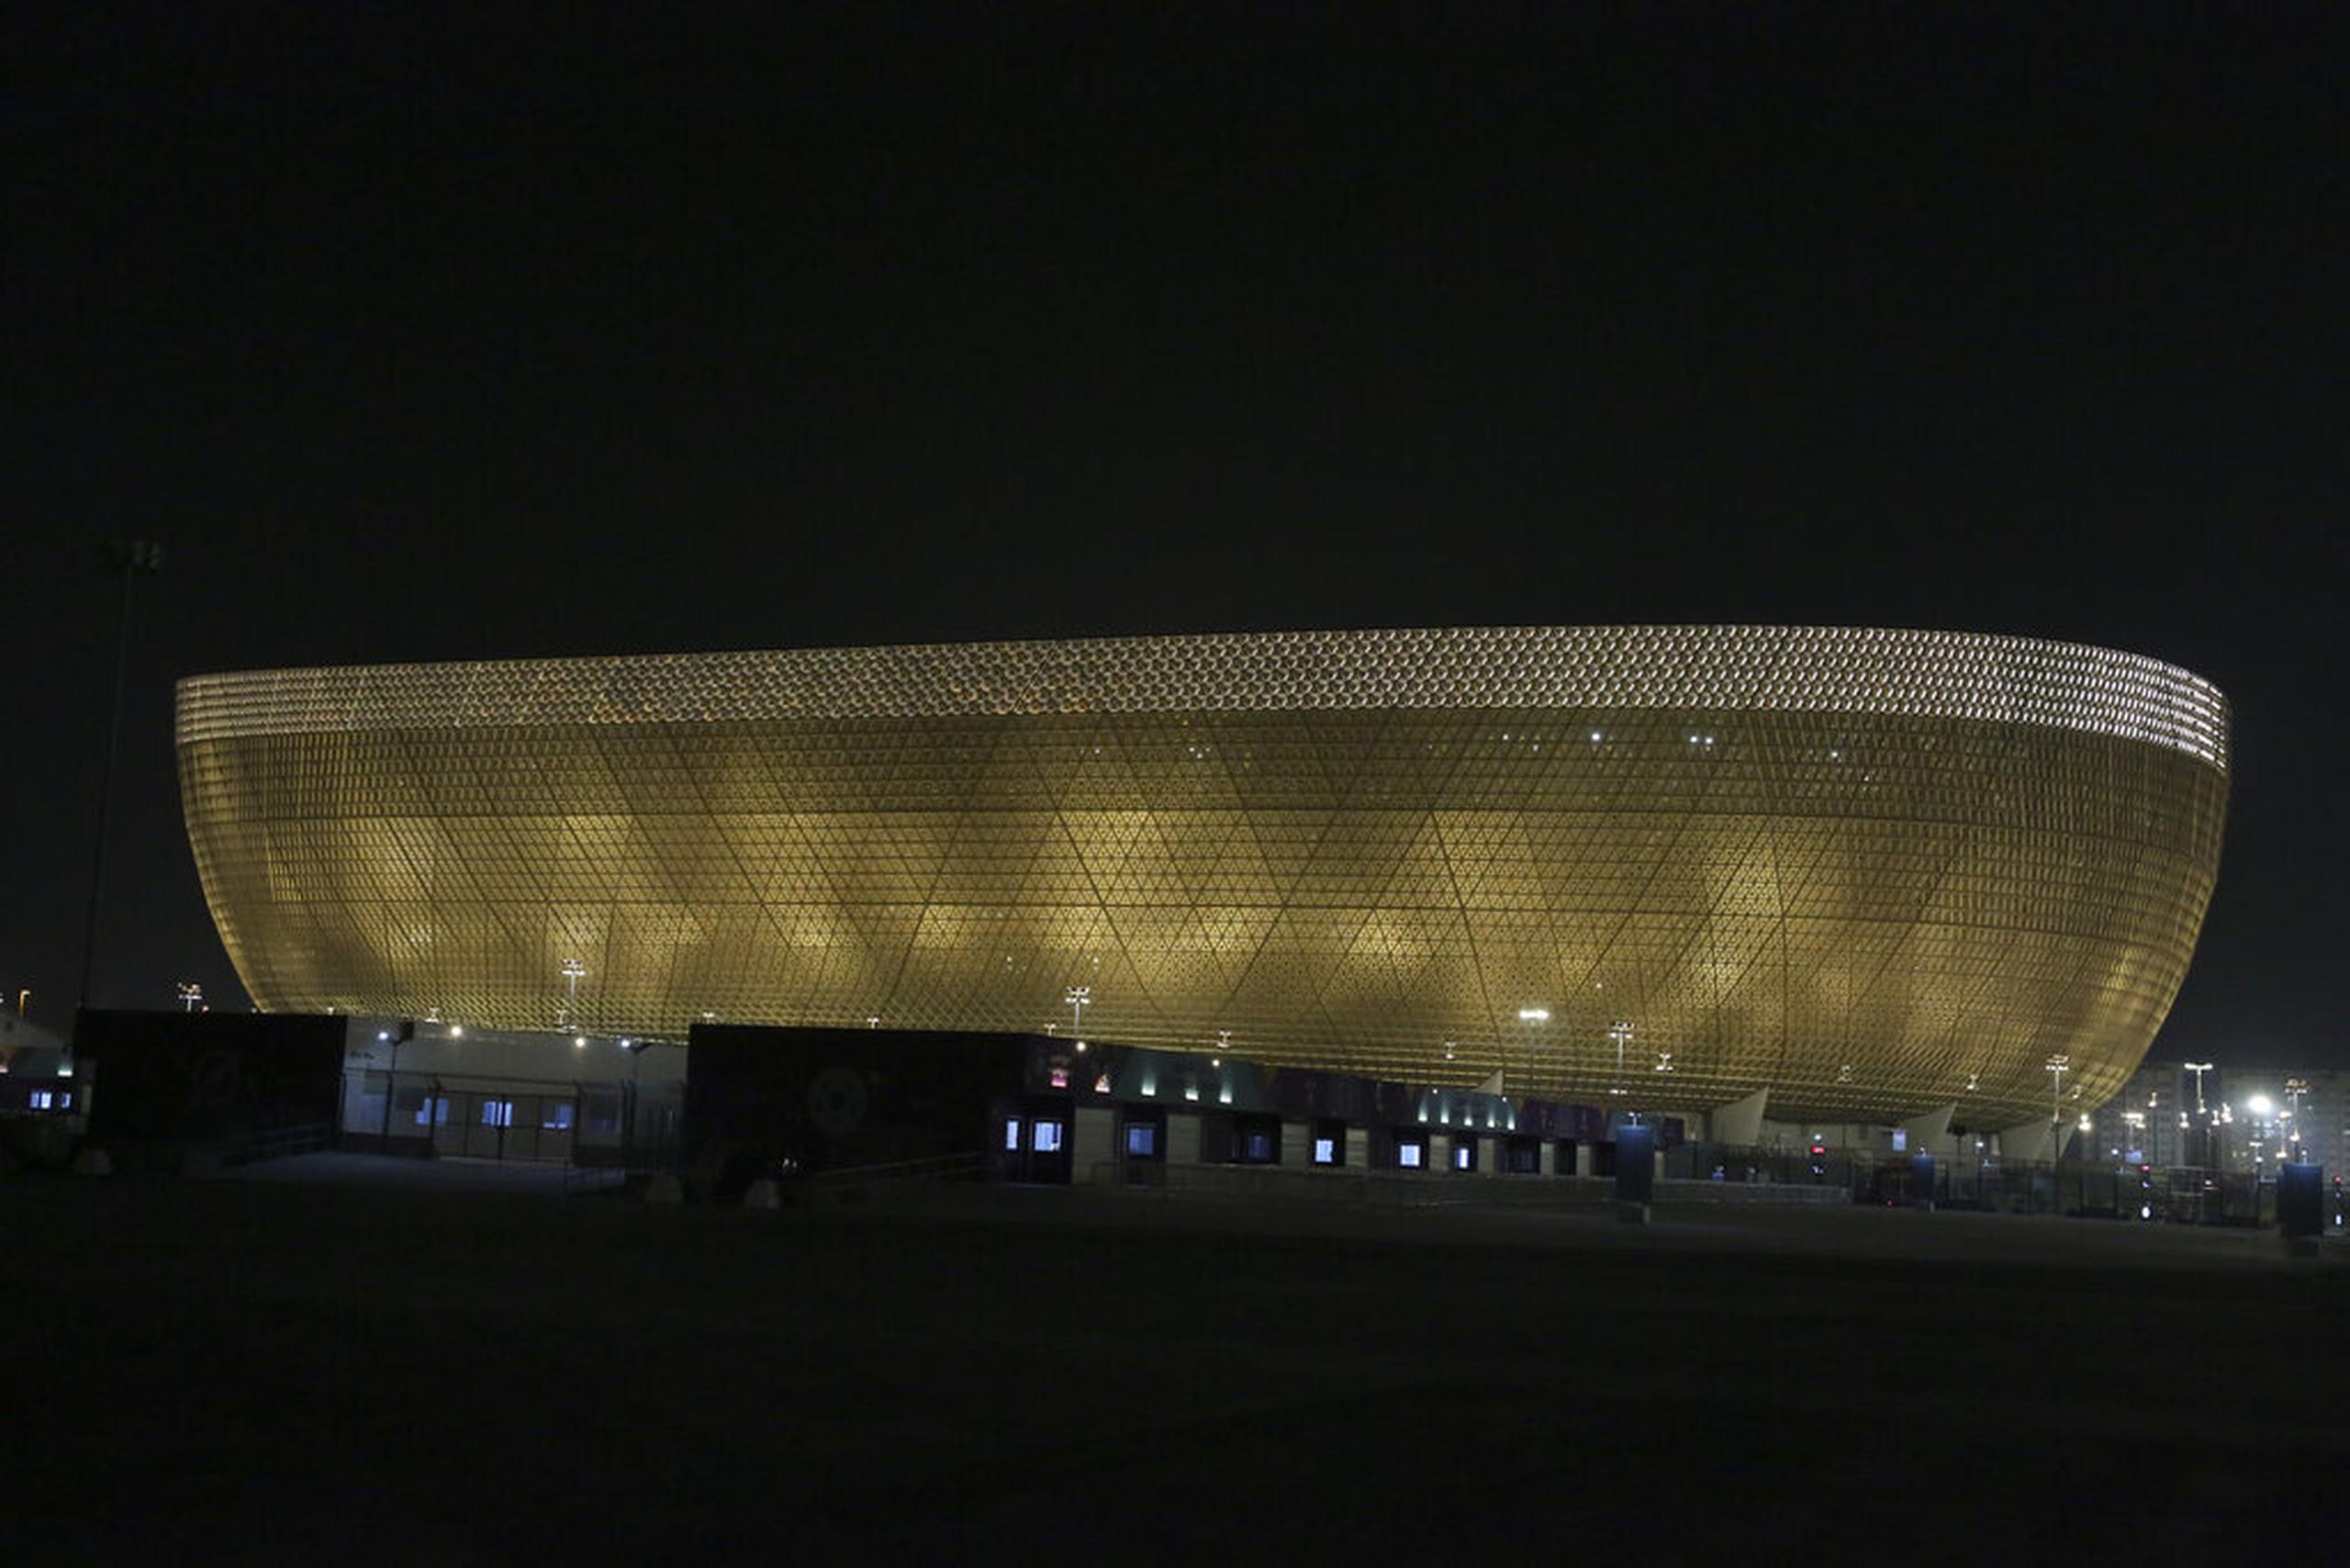 Qatar construyó ocho estadios para el Mundial y ha creado una ciudad enteramente nueva de Lusail donde se jugará la final.